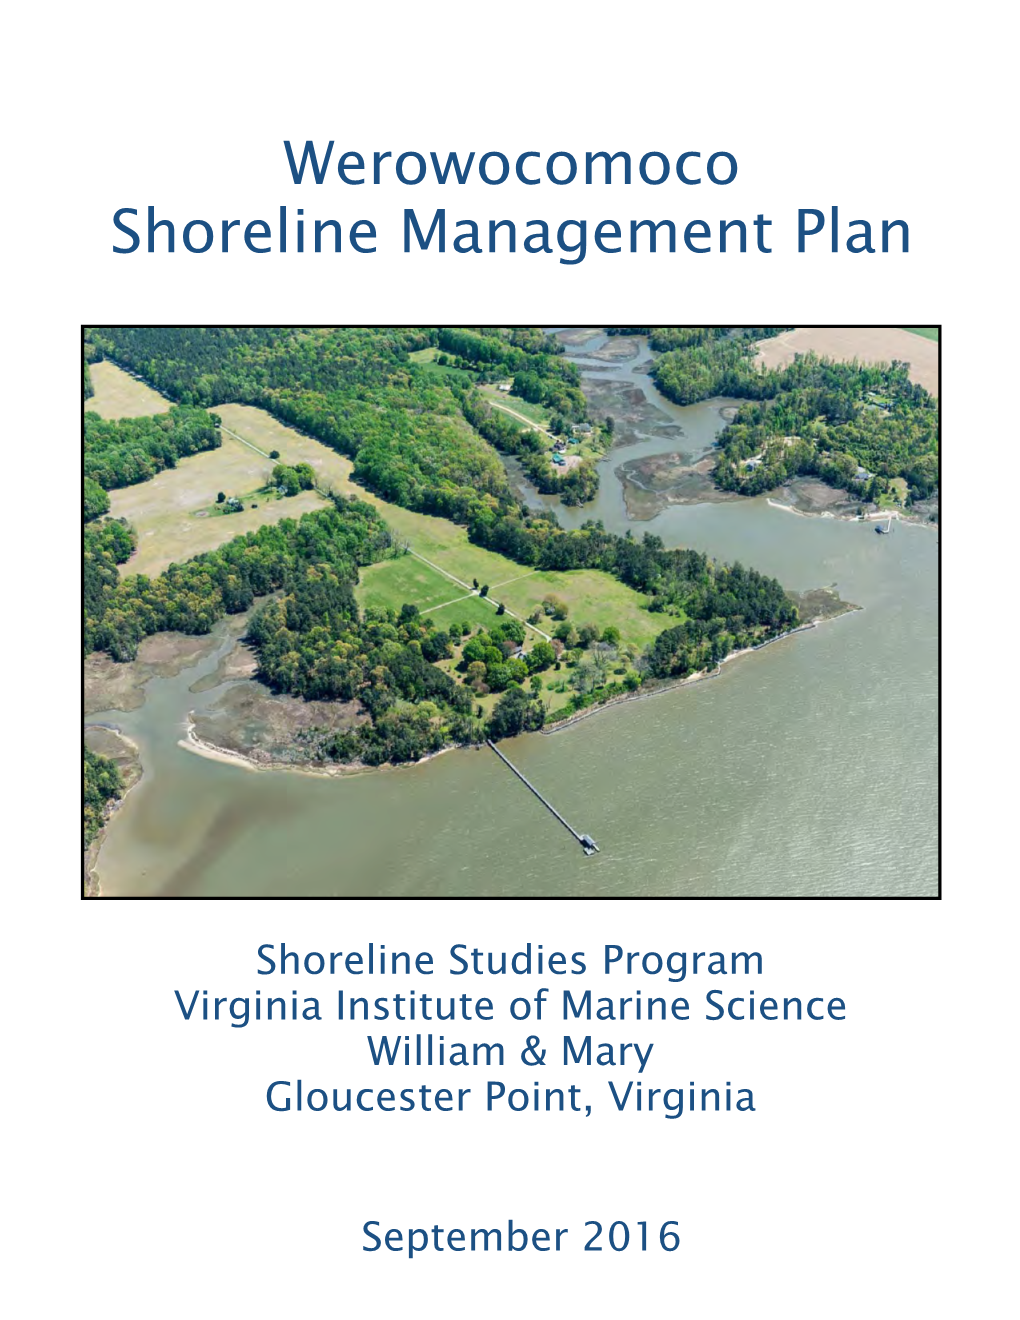 Werowocomoco Shoreline Management Plan